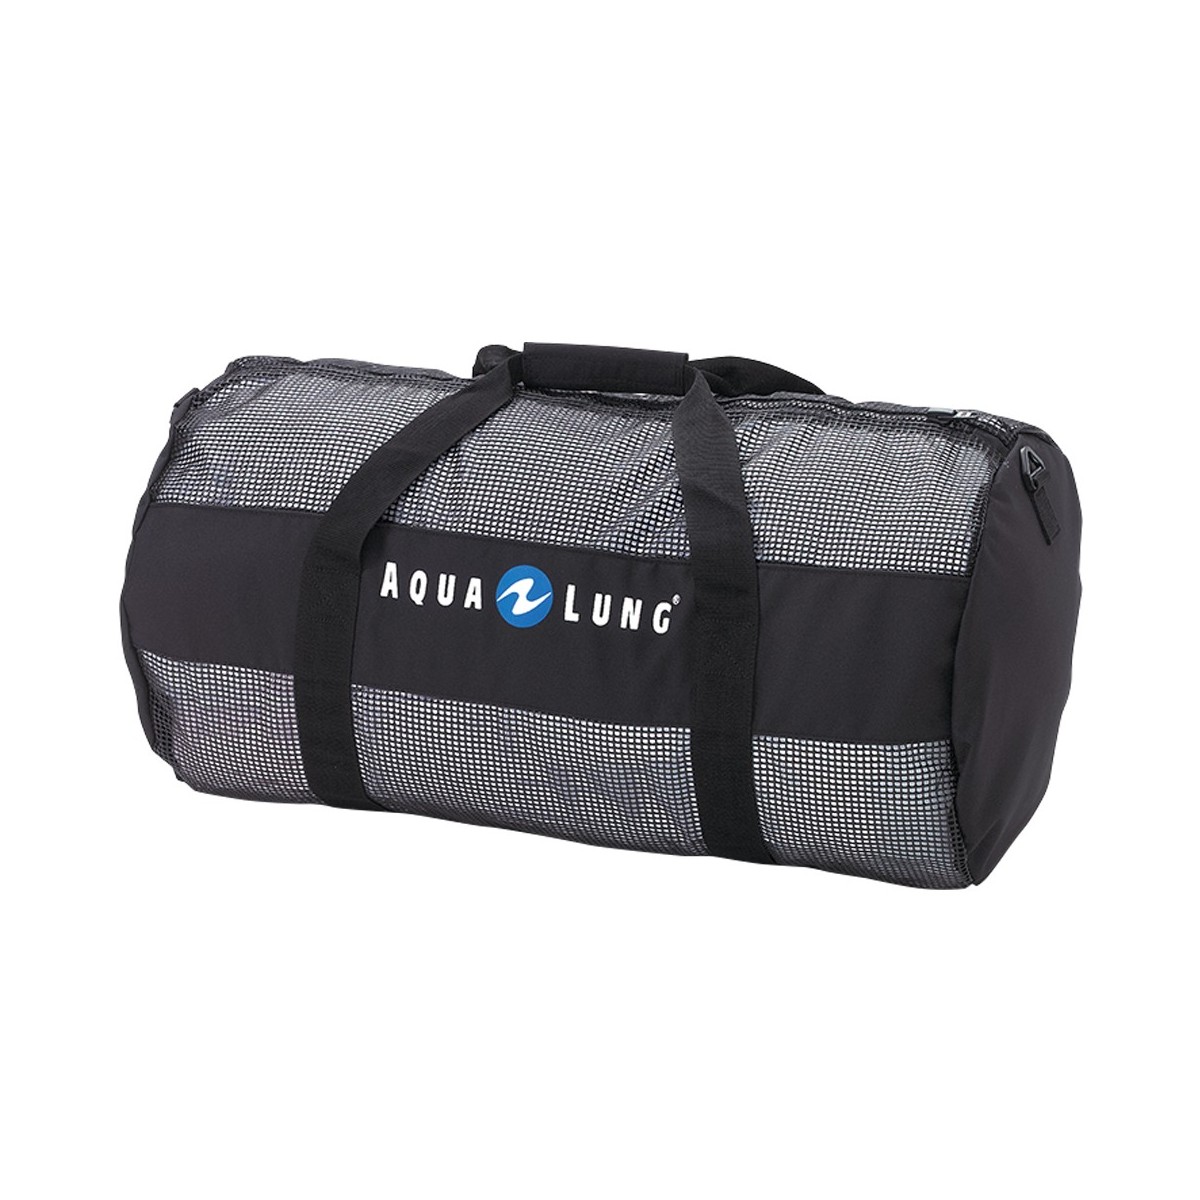 Aqua lung Mariner Mesh Bag